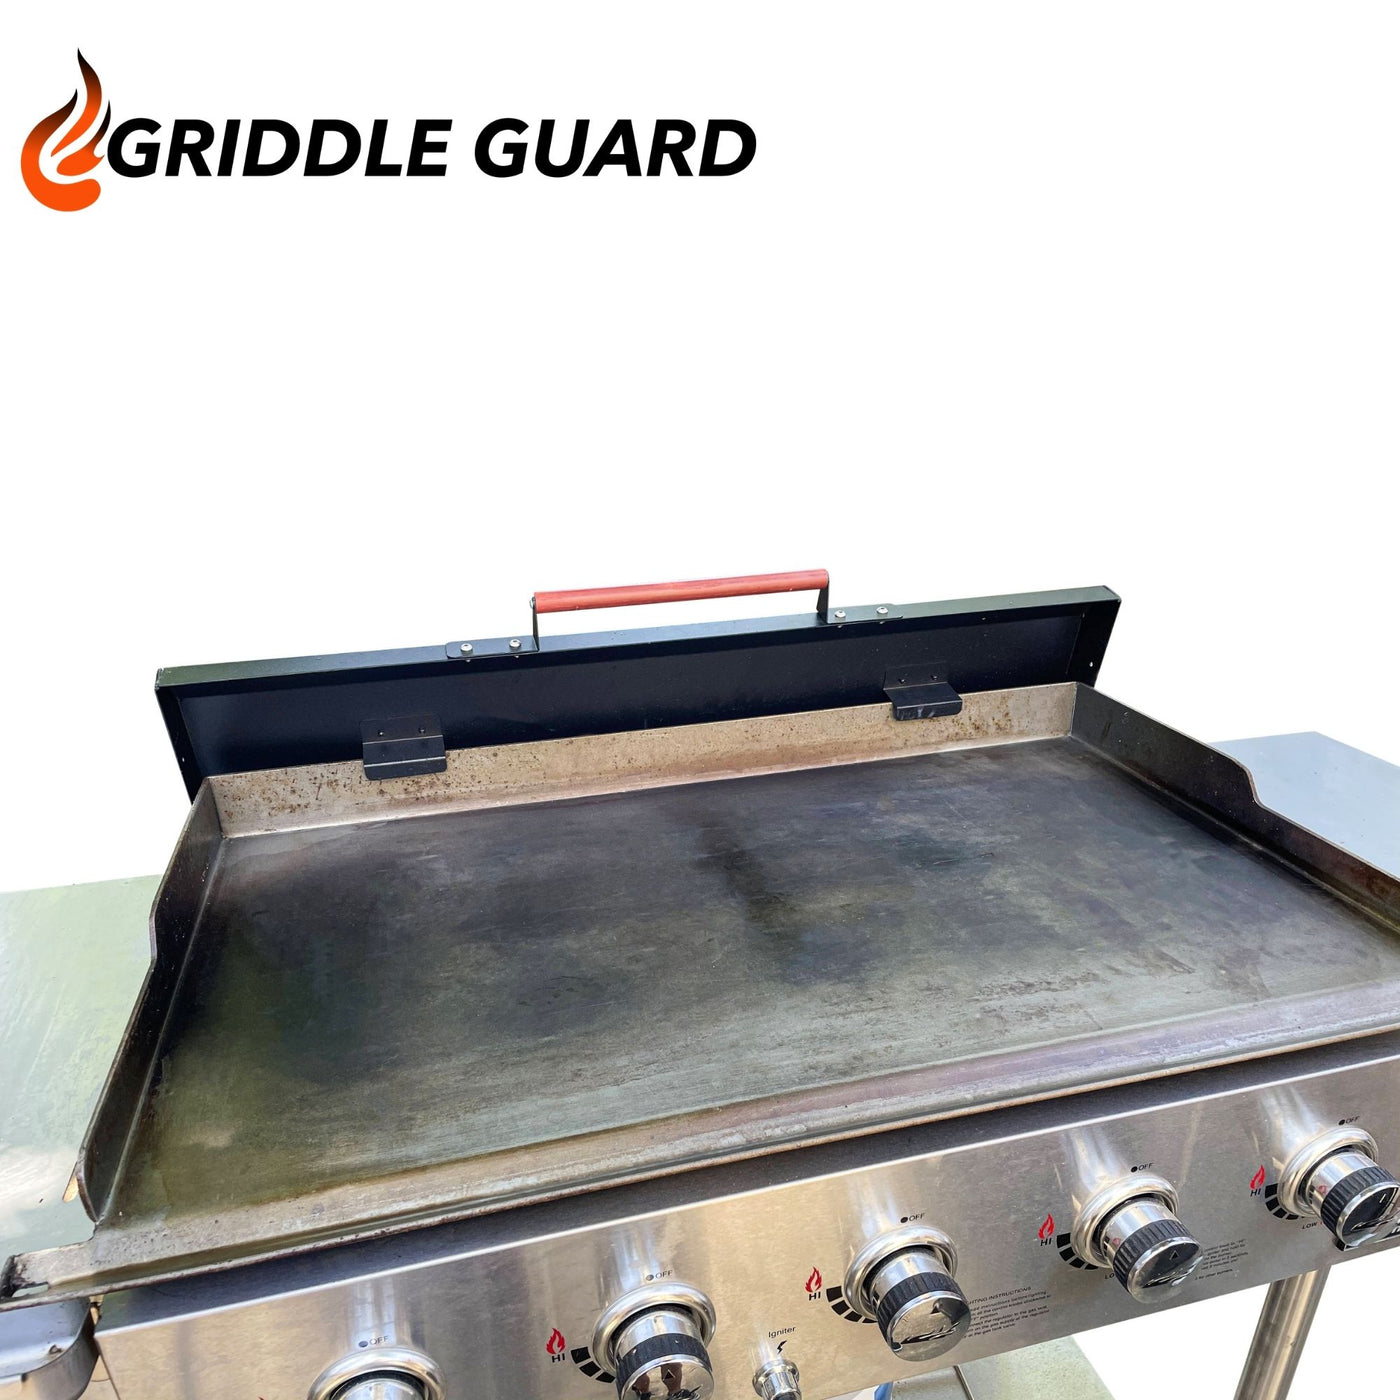 GriddleGuard Hard Cover Lid for Royal Gourmet 5-Burner Griddle